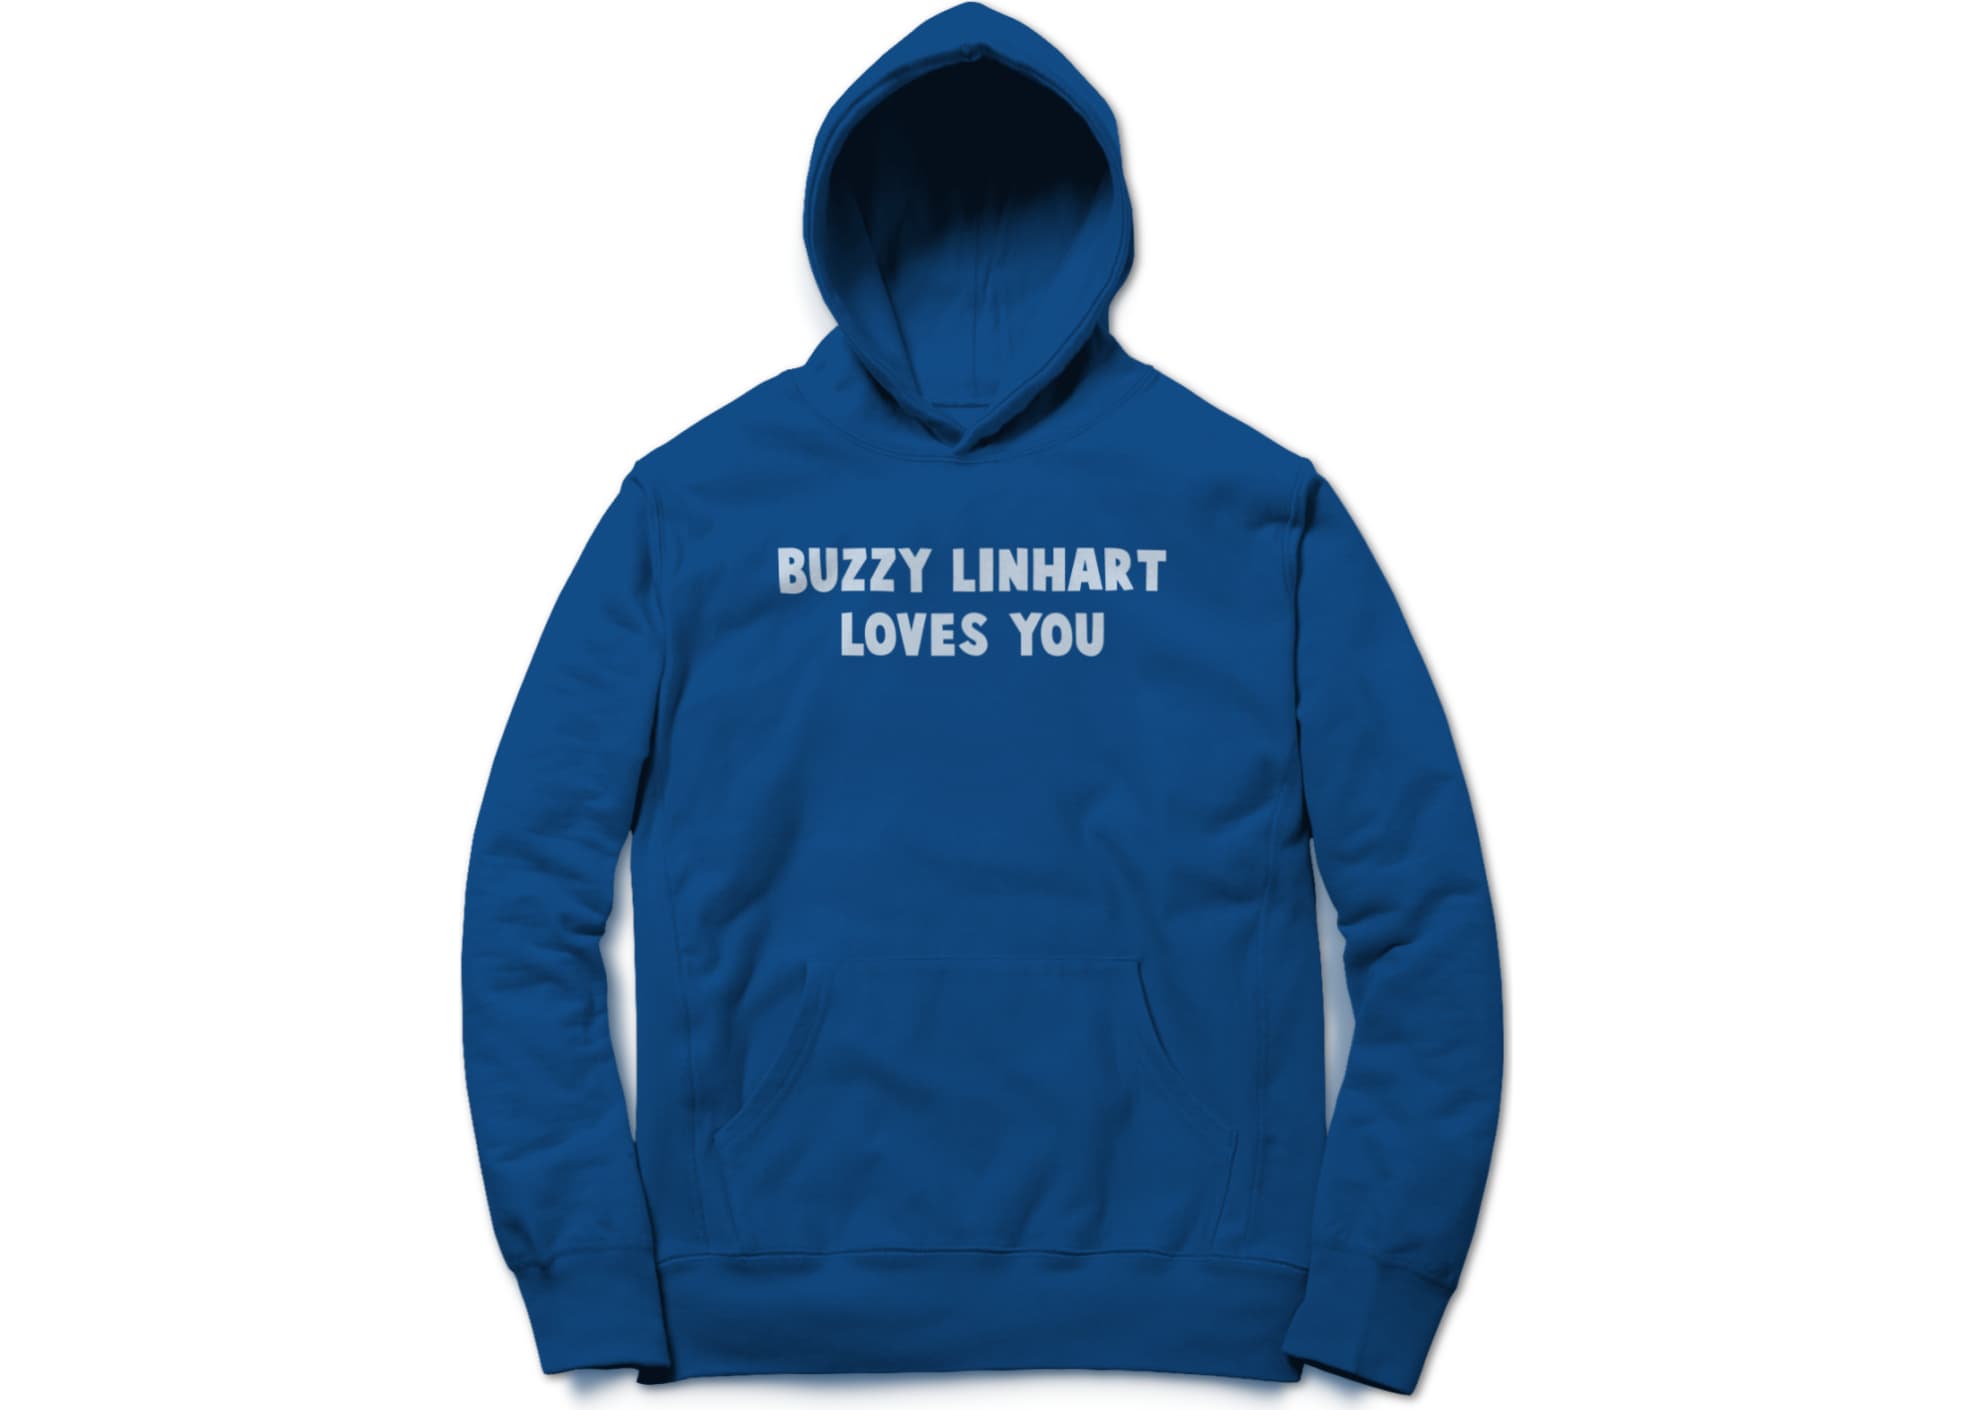 Buzzy linhart love buzz 1513900594